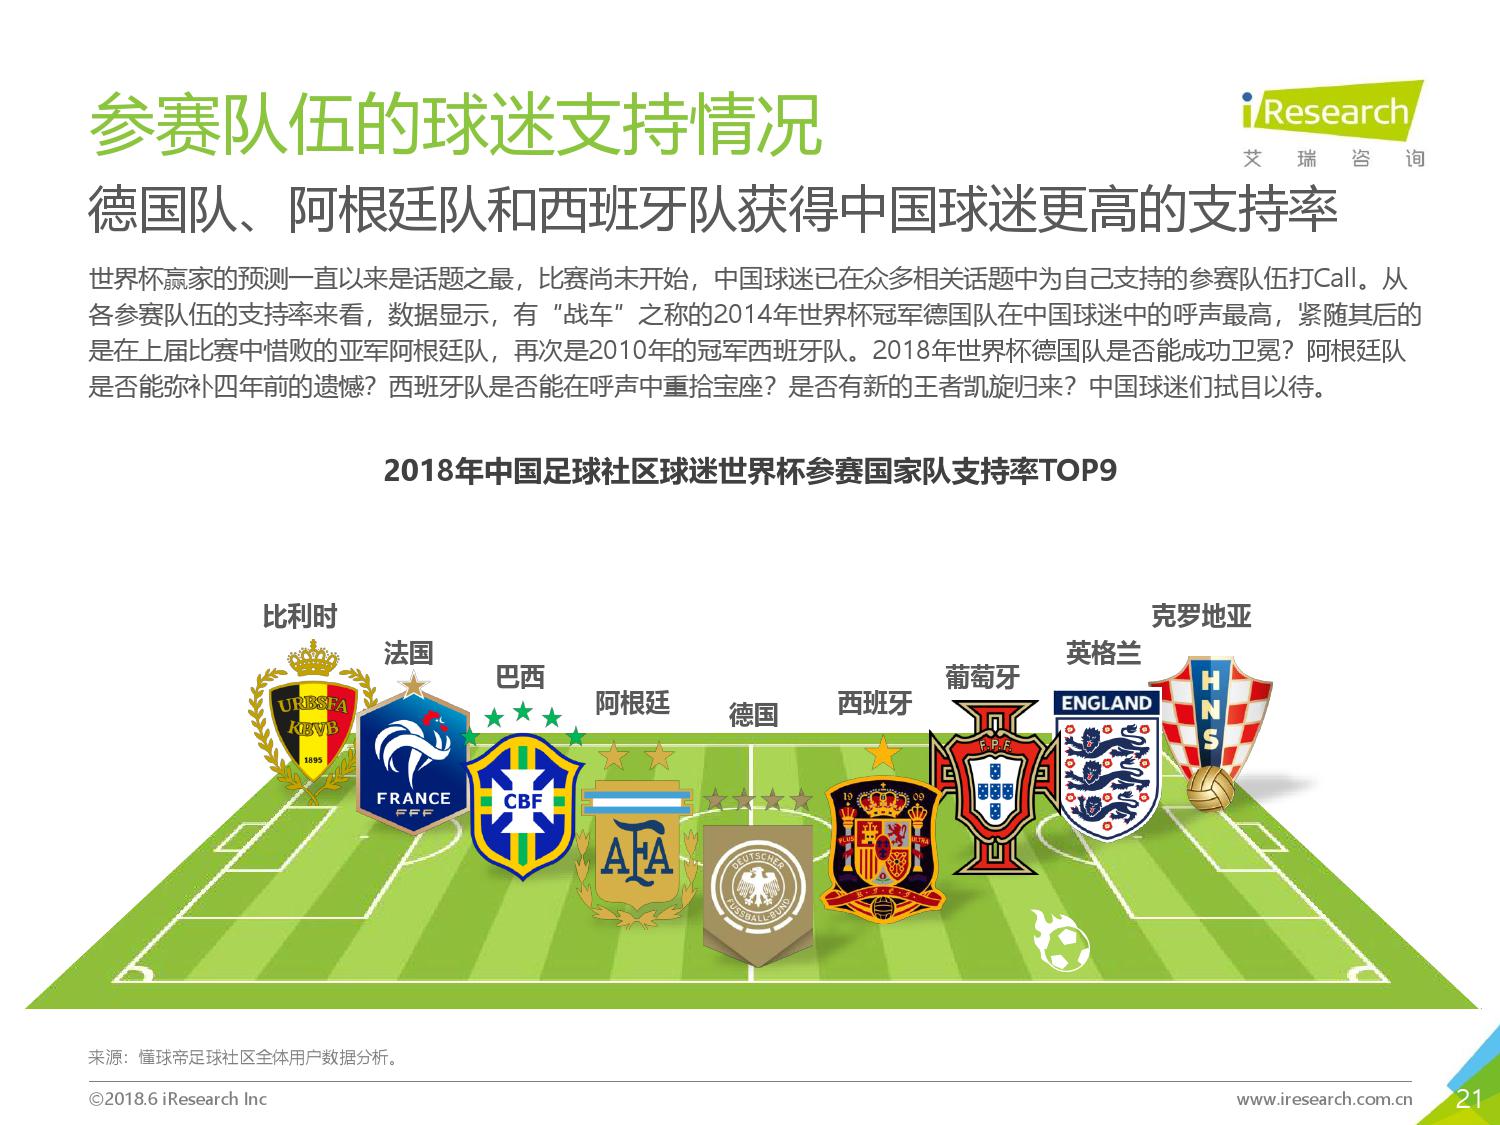 艾瑞:《2018年中国足球社区球迷世界杯主题洞